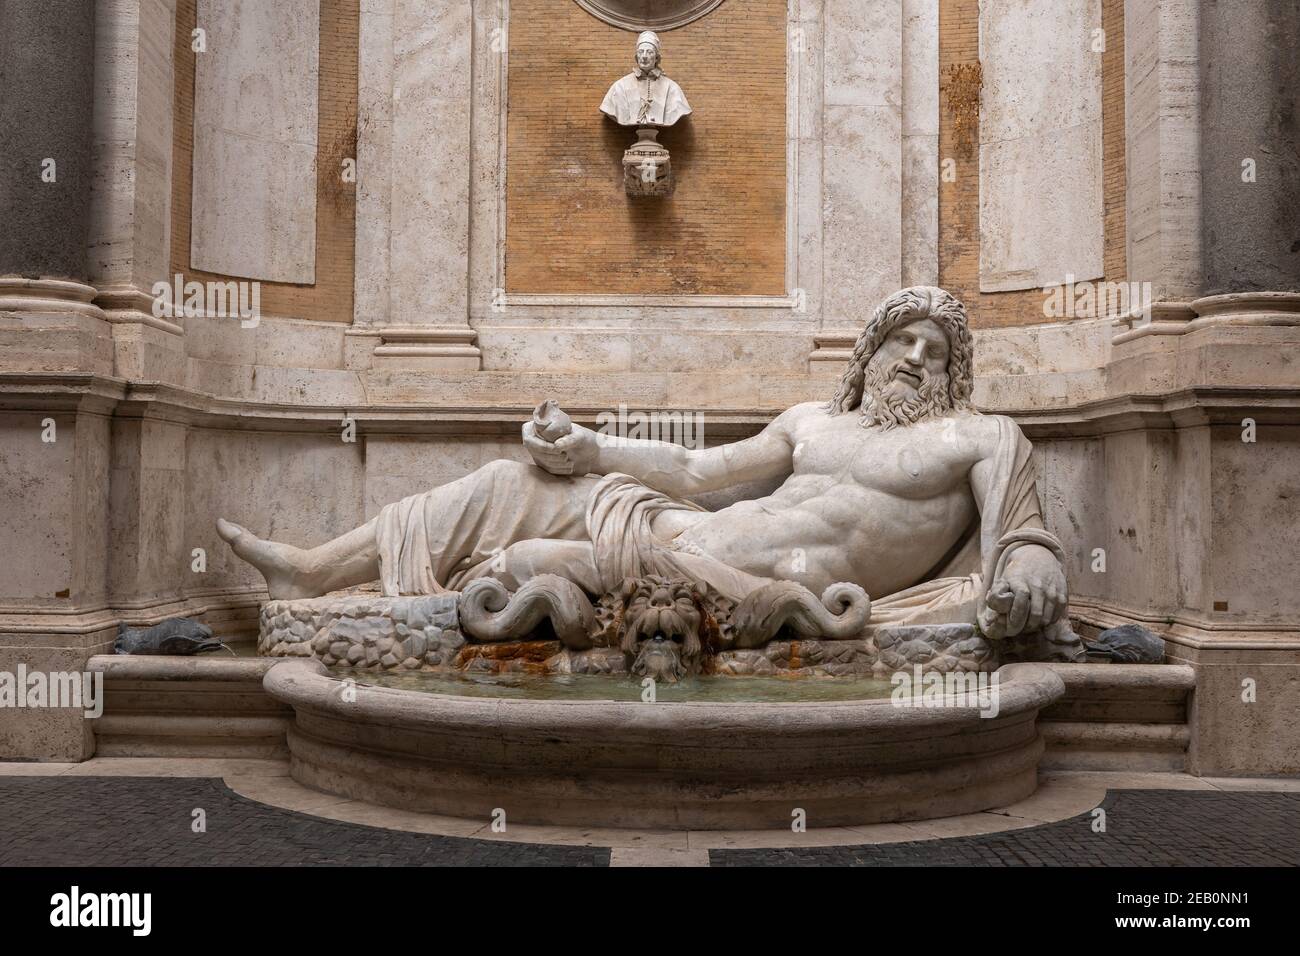 Statue et fontaine Marforio au Palazzo Nuovo, Musées Capitoline, Rome, Italie, sculpture romaine du 1er siècle en marbre de la rivière inclinable dieu ou l'océan Banque D'Images